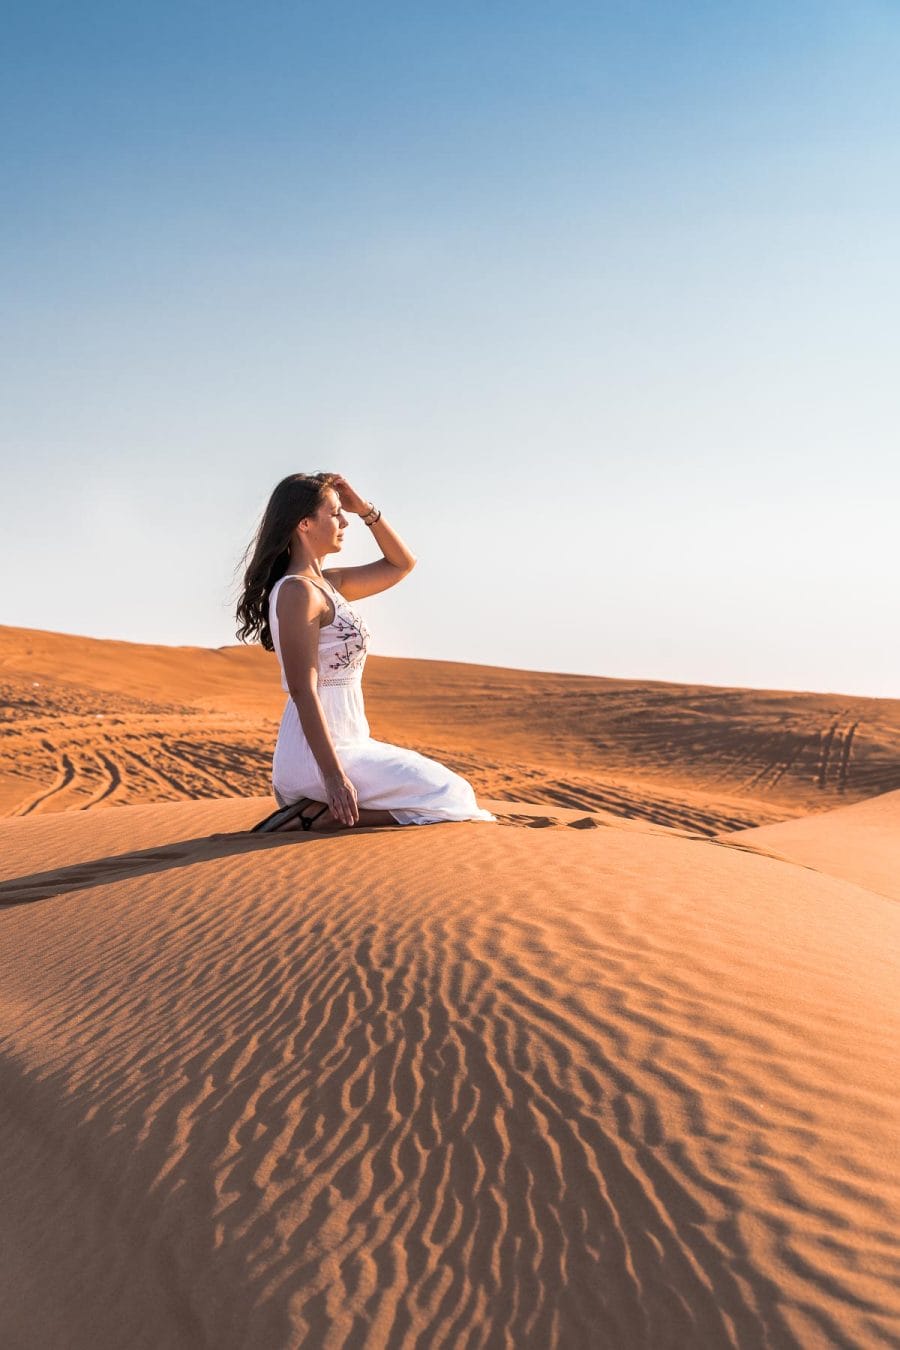 Girl in white dress sitting in the Dubai desert on the sand dunes